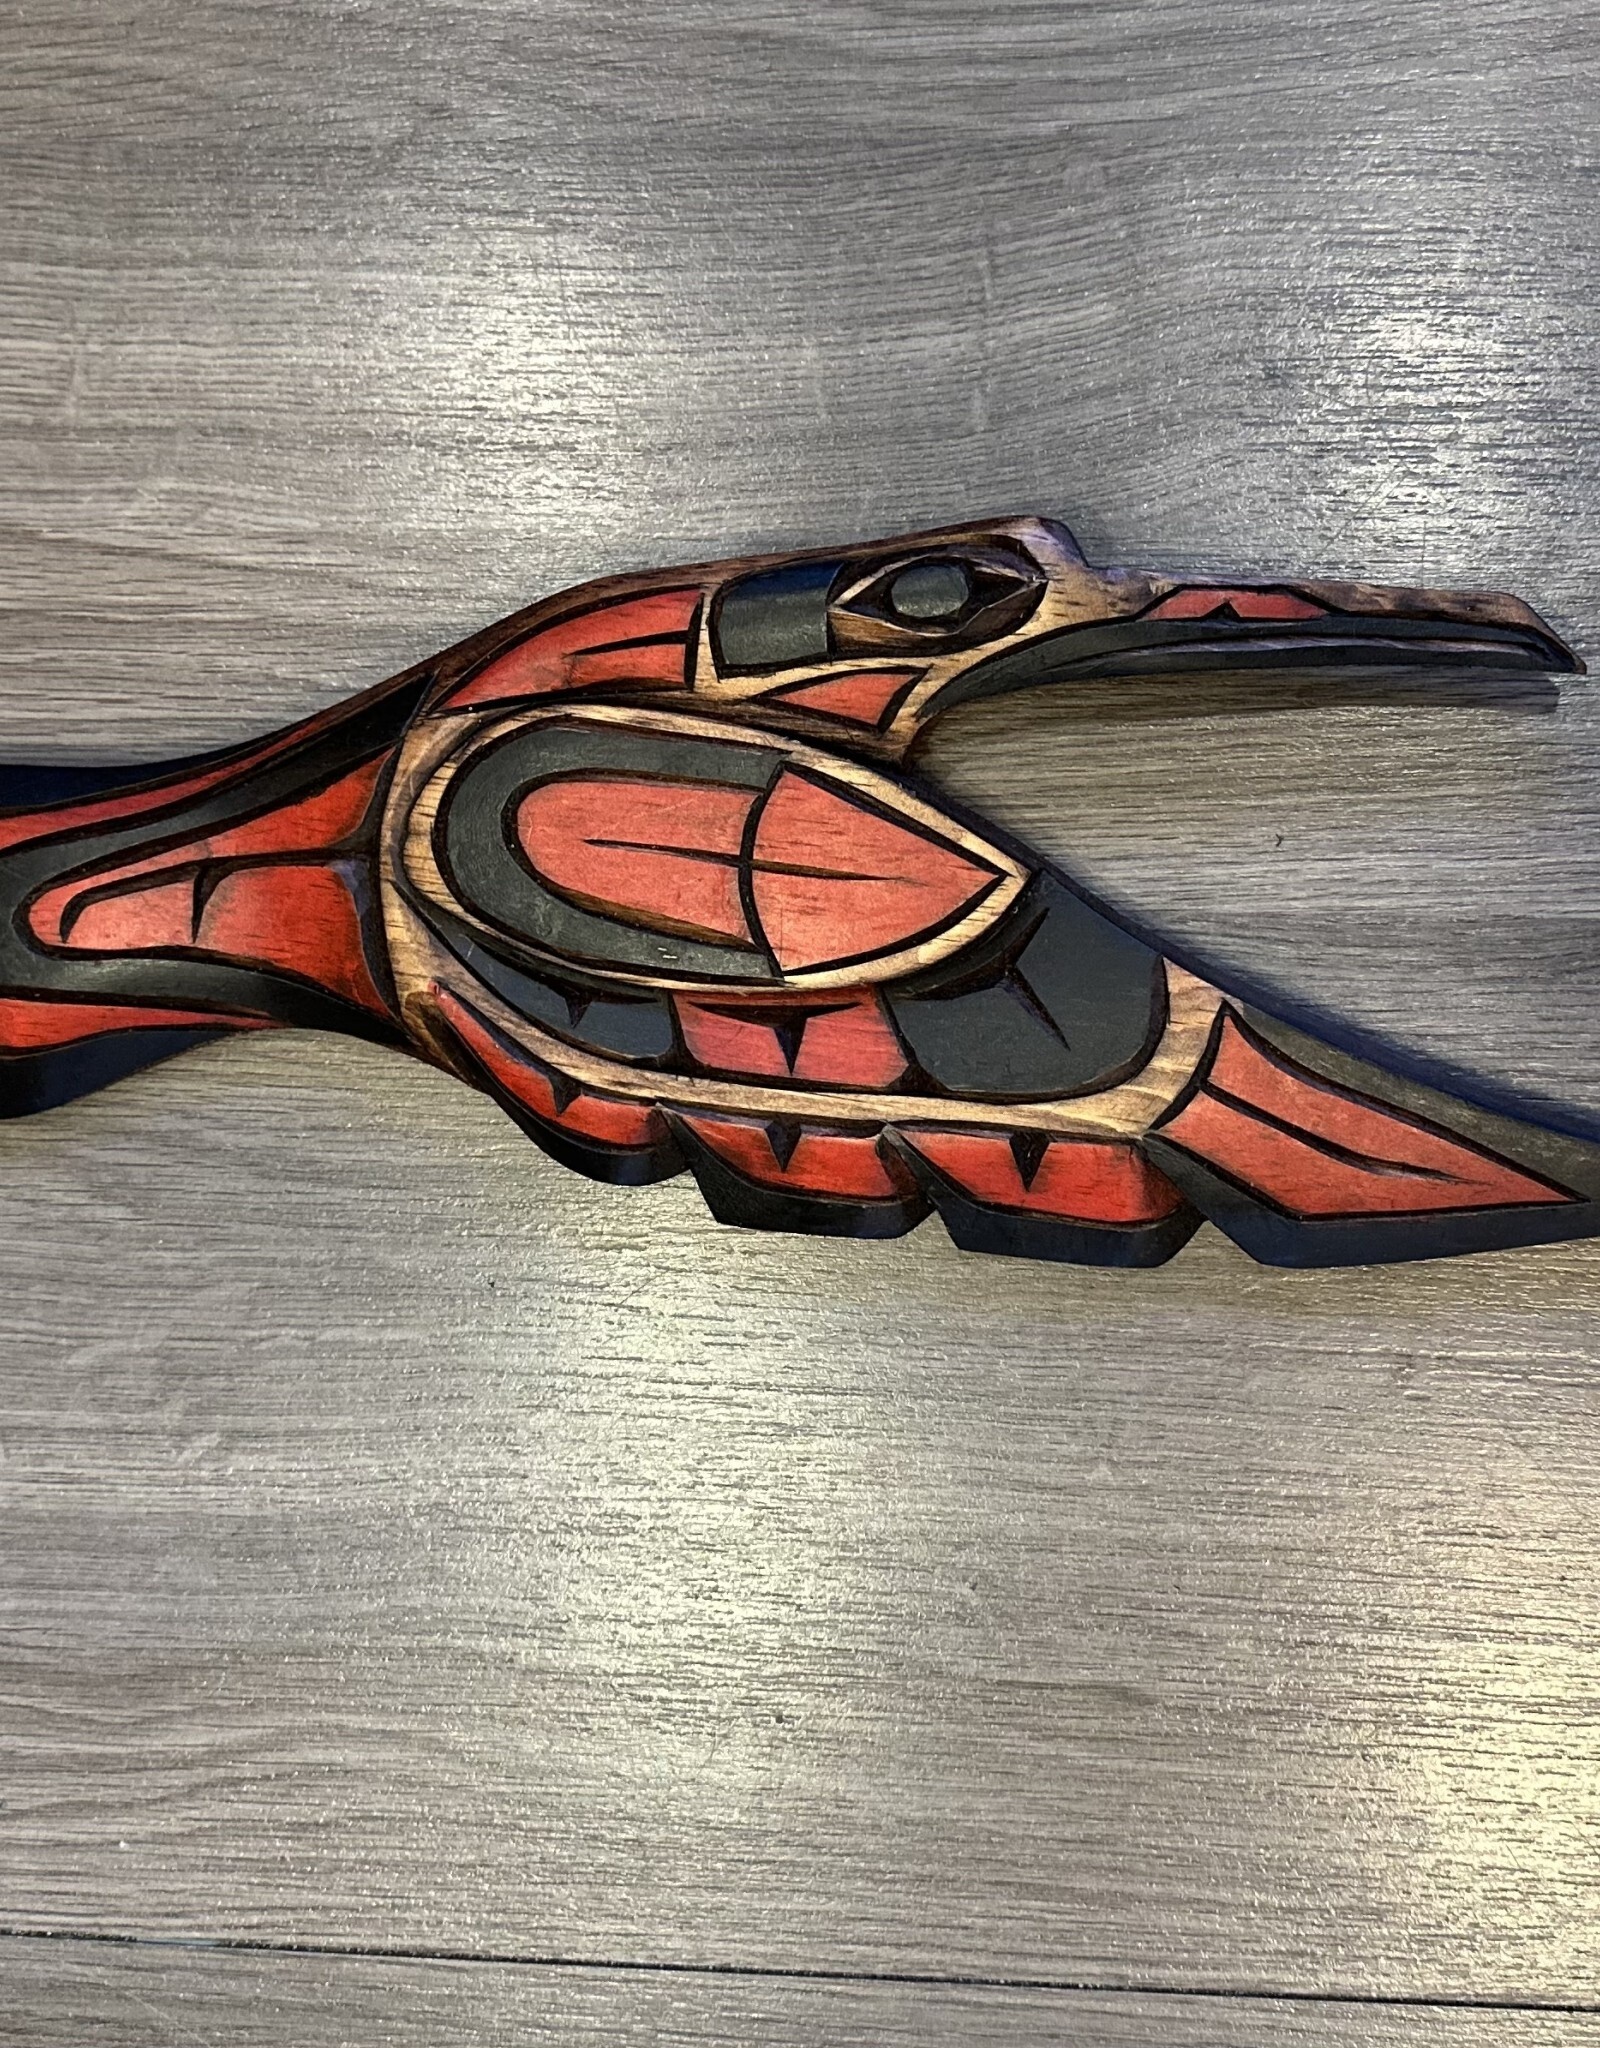 Aboriginal - Hummingbird Carving - Carver: No Signature